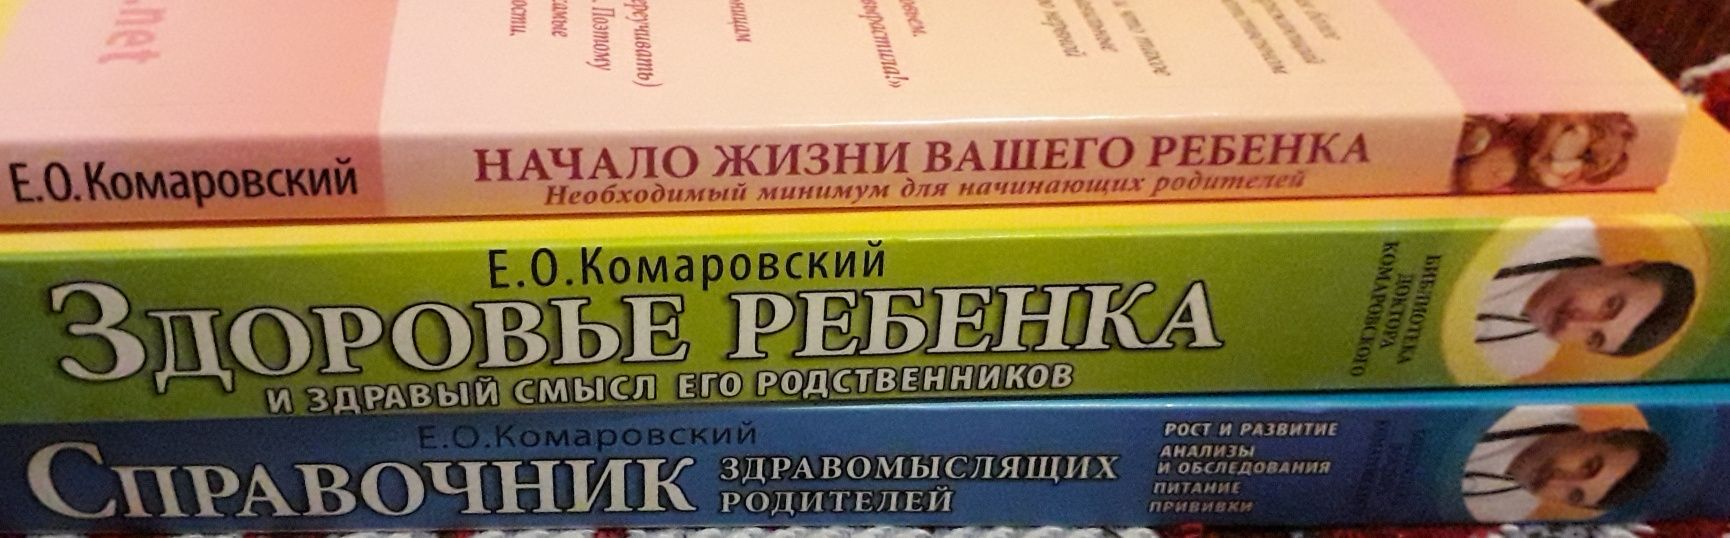 Набор книг д.Комаровского